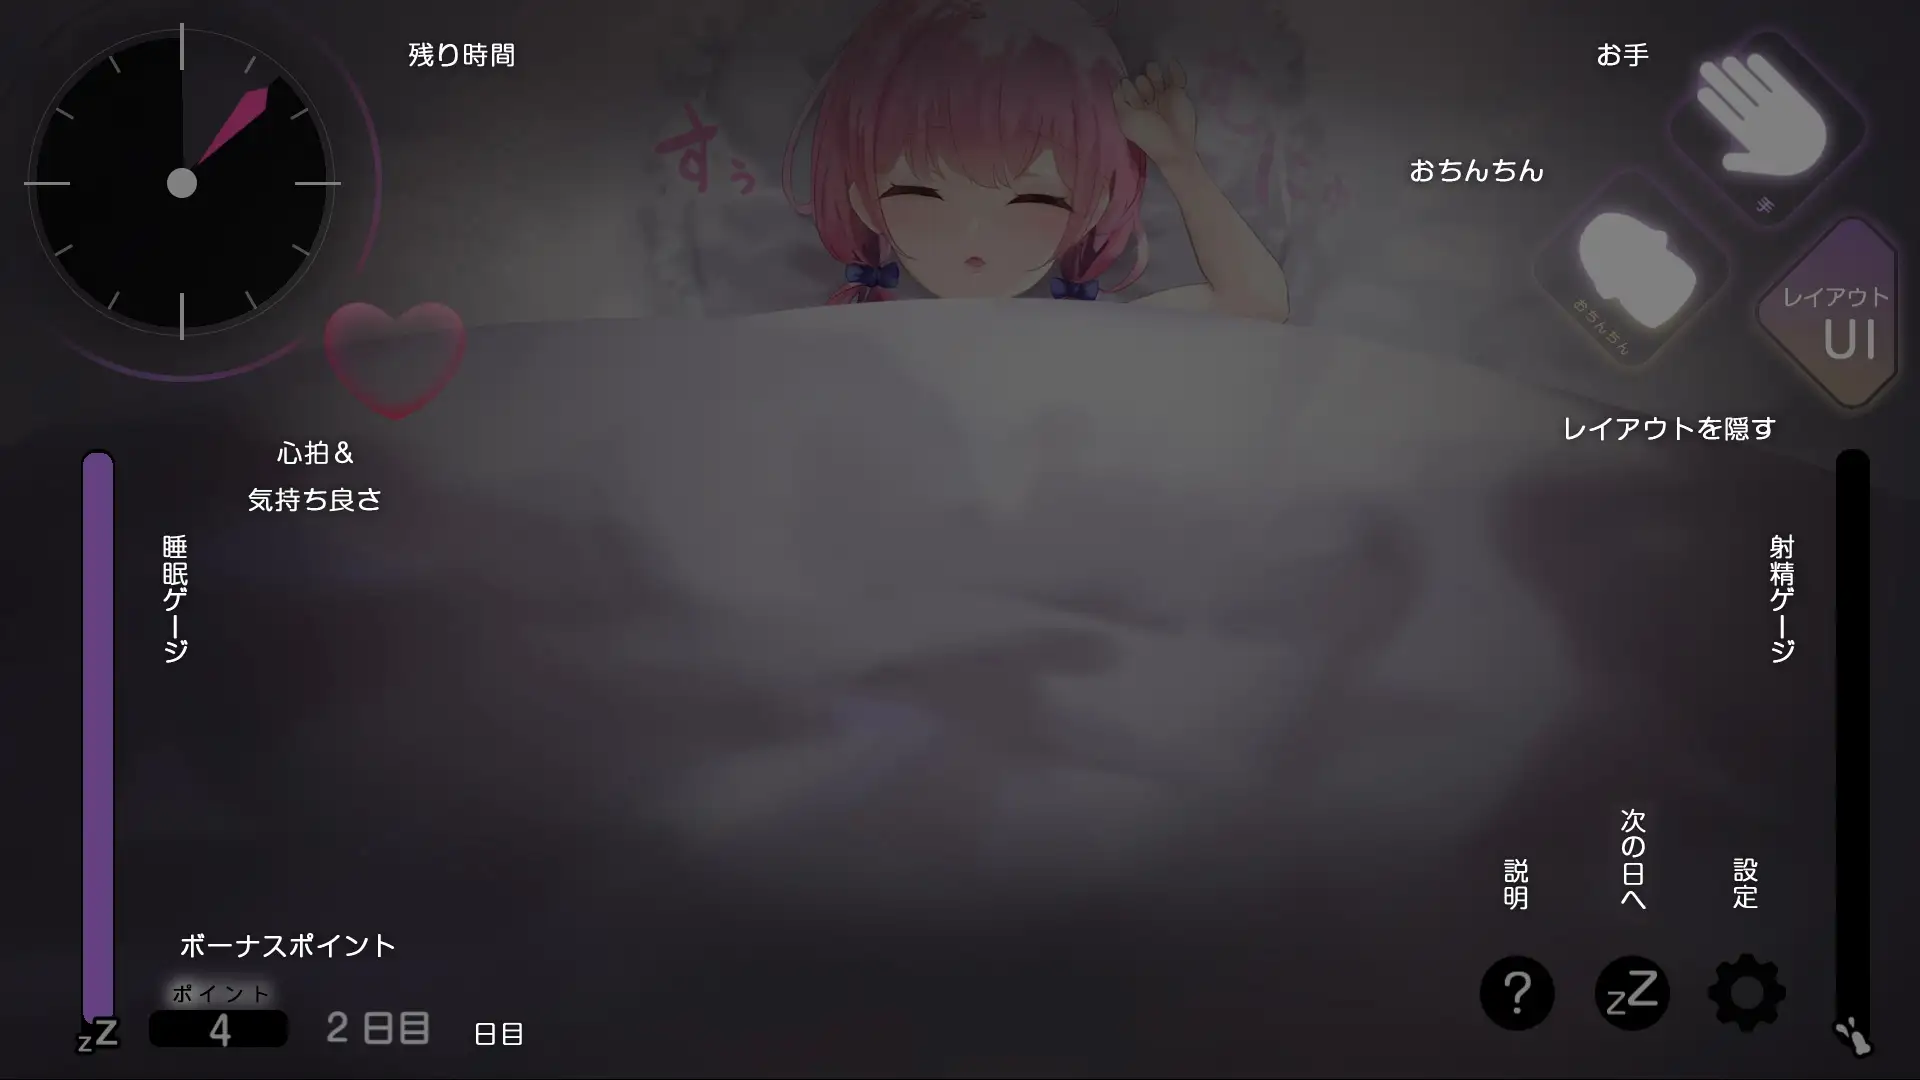 [コラピ]【Android】お休みなさい、お兄ちゃん♪【睡眠姦・おさわりシミュレーション】